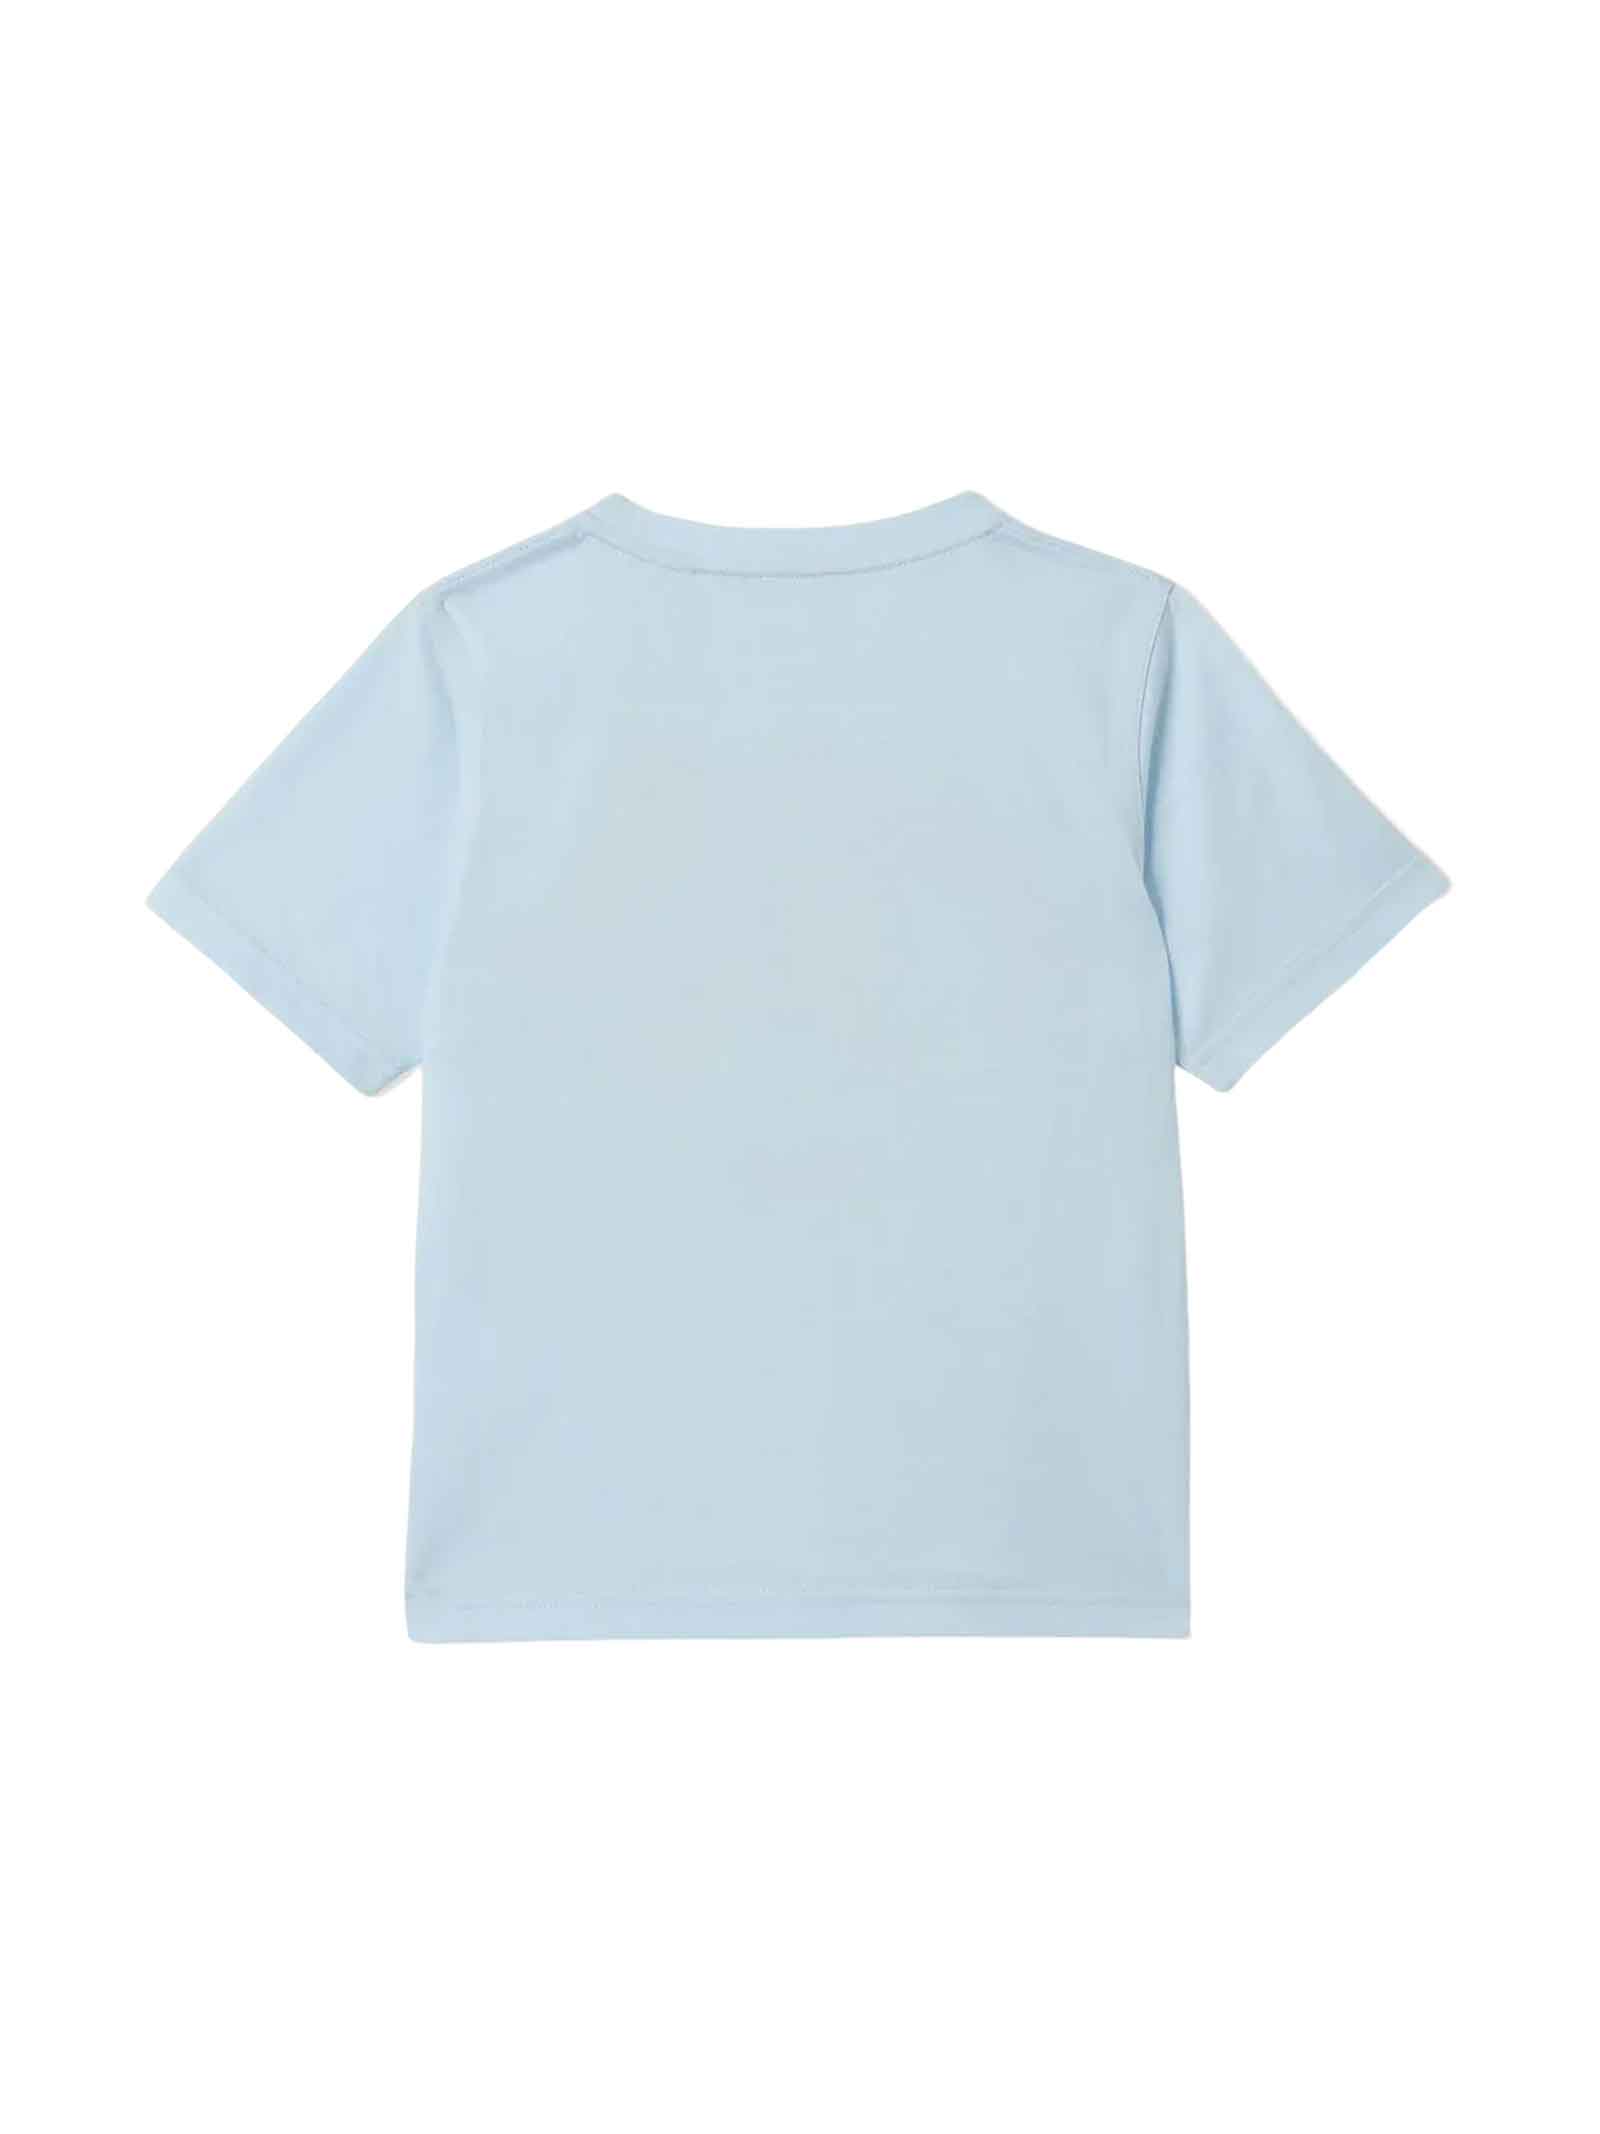 Shop Burberry Light Blue T-shirt Boy